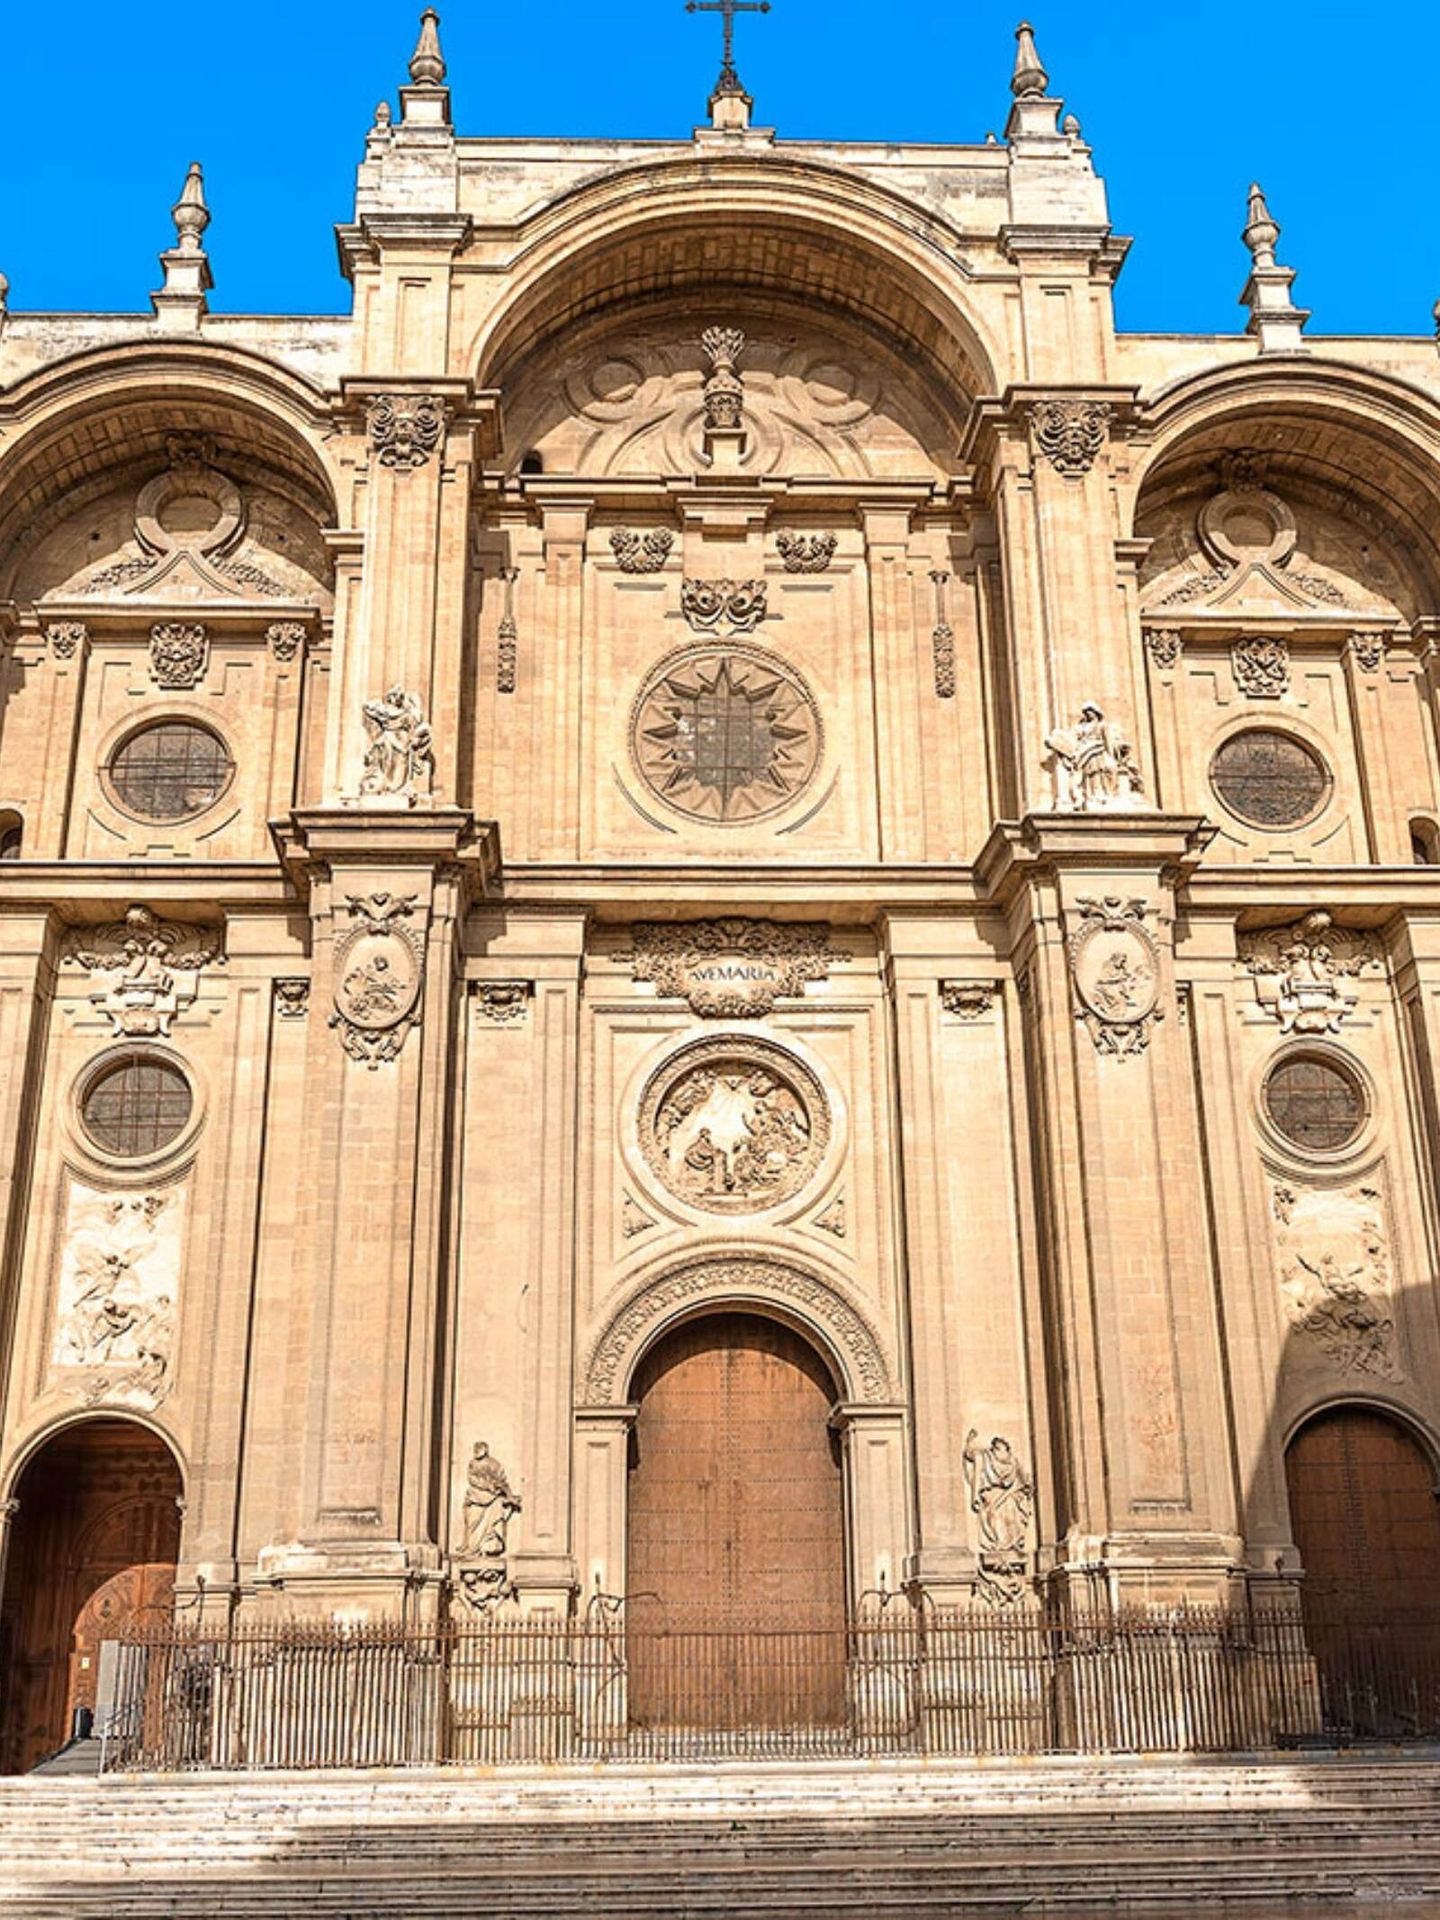 Descubre las catedrales de España, como la catedral de Granada. (Cortesía/Oficina de Turismo de España)